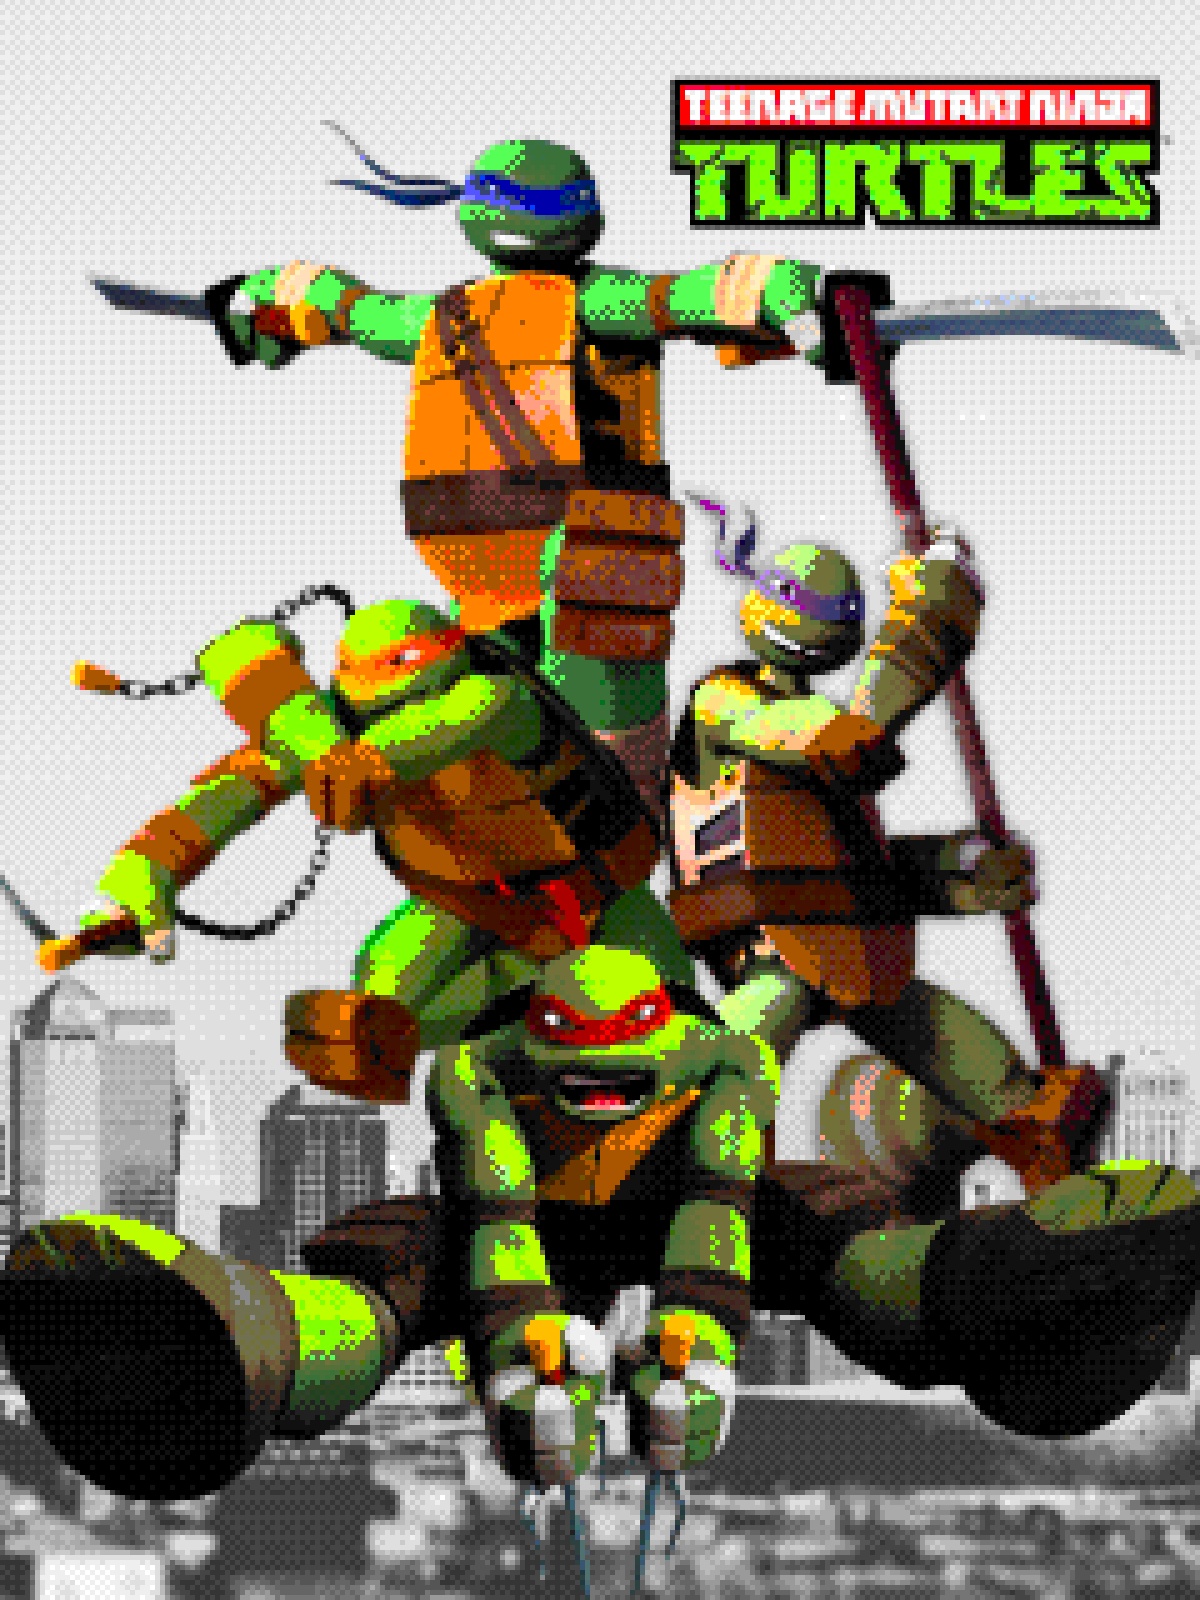 Teenage Mutant Ninja Turtles 2012 Render by calmoose415 on DeviantArt